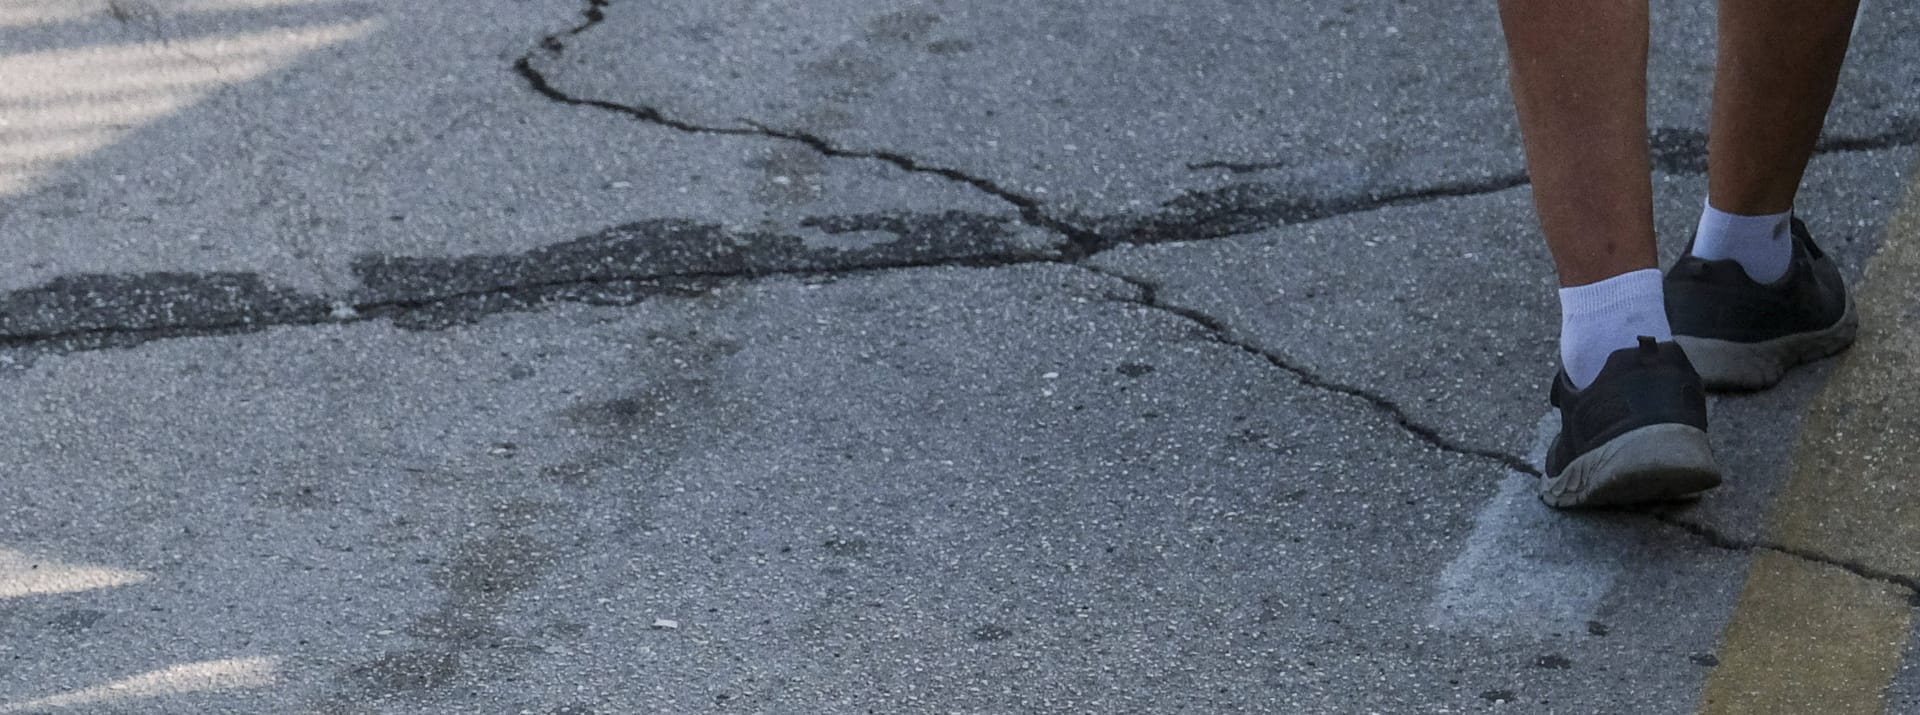 Die anhaltenden seismischen Aktivitäten in der Region um die Phlegräischen Felder hinterlassen ihre Spuren. Risse in den Straßen von Pozzuoli zeugen von Beben.